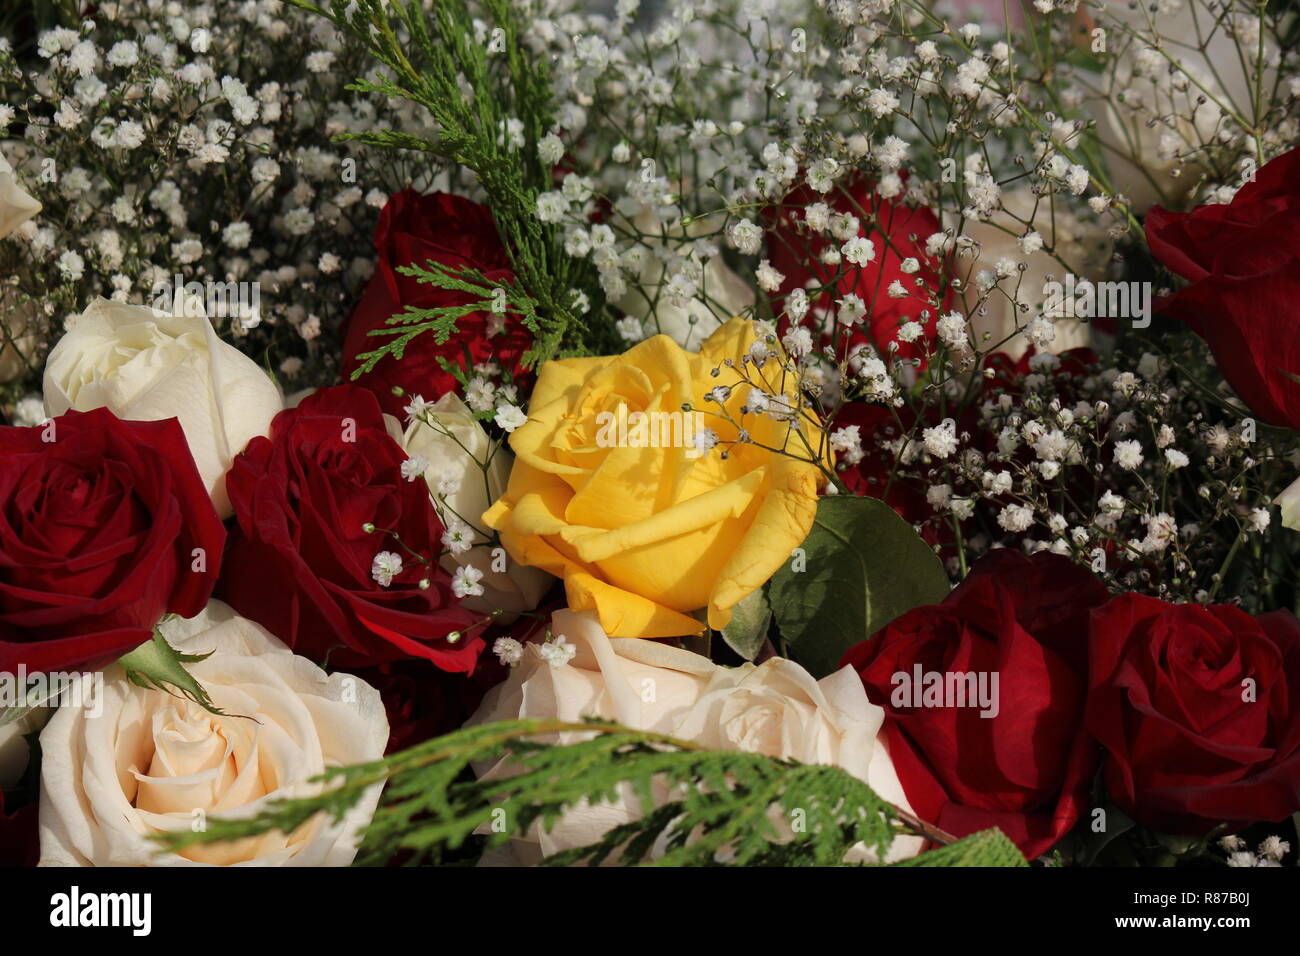 Precioso ramo de hermoso color rojo, blanco y amarillo de rosas y flores en  el Santuario de Nuestra Señora de Guadalupe en Des Plaines, Illinois,  EE.UU. Nuestra Señora de Guadalupe Fotografía de